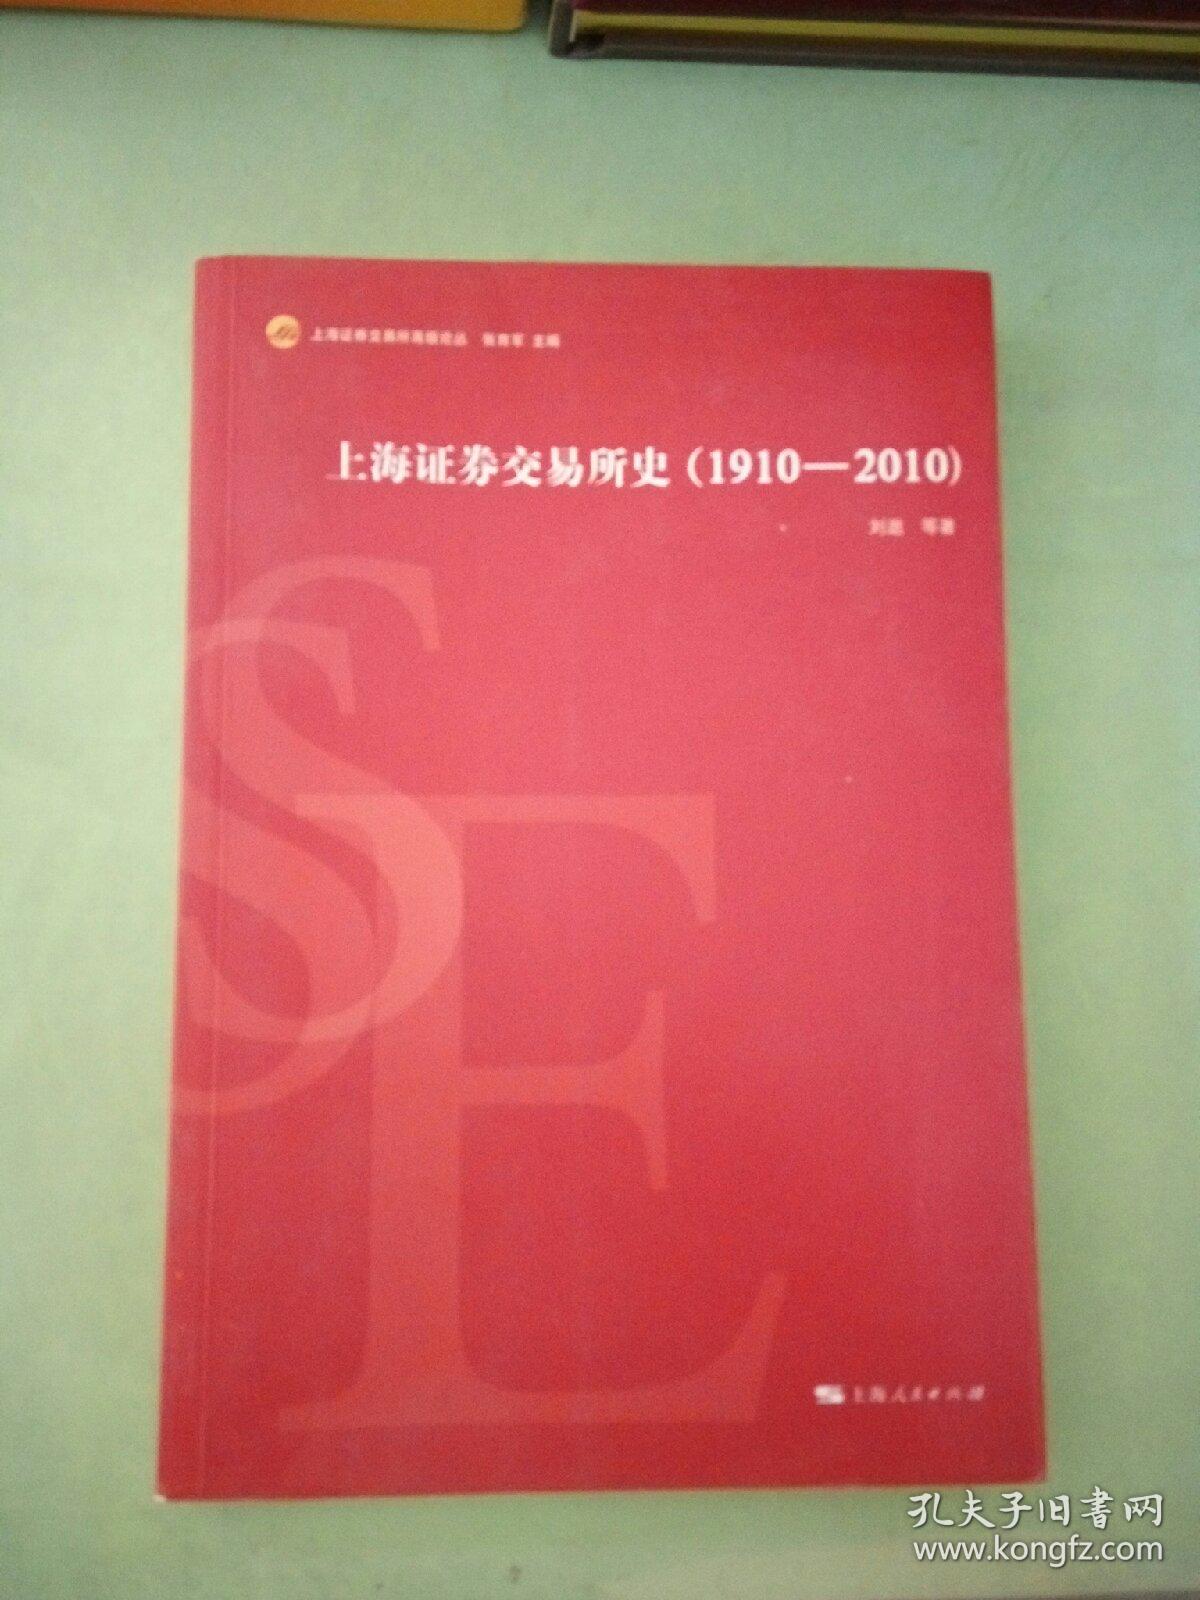 上海证券交易所史(1910-2010)(有水印)。